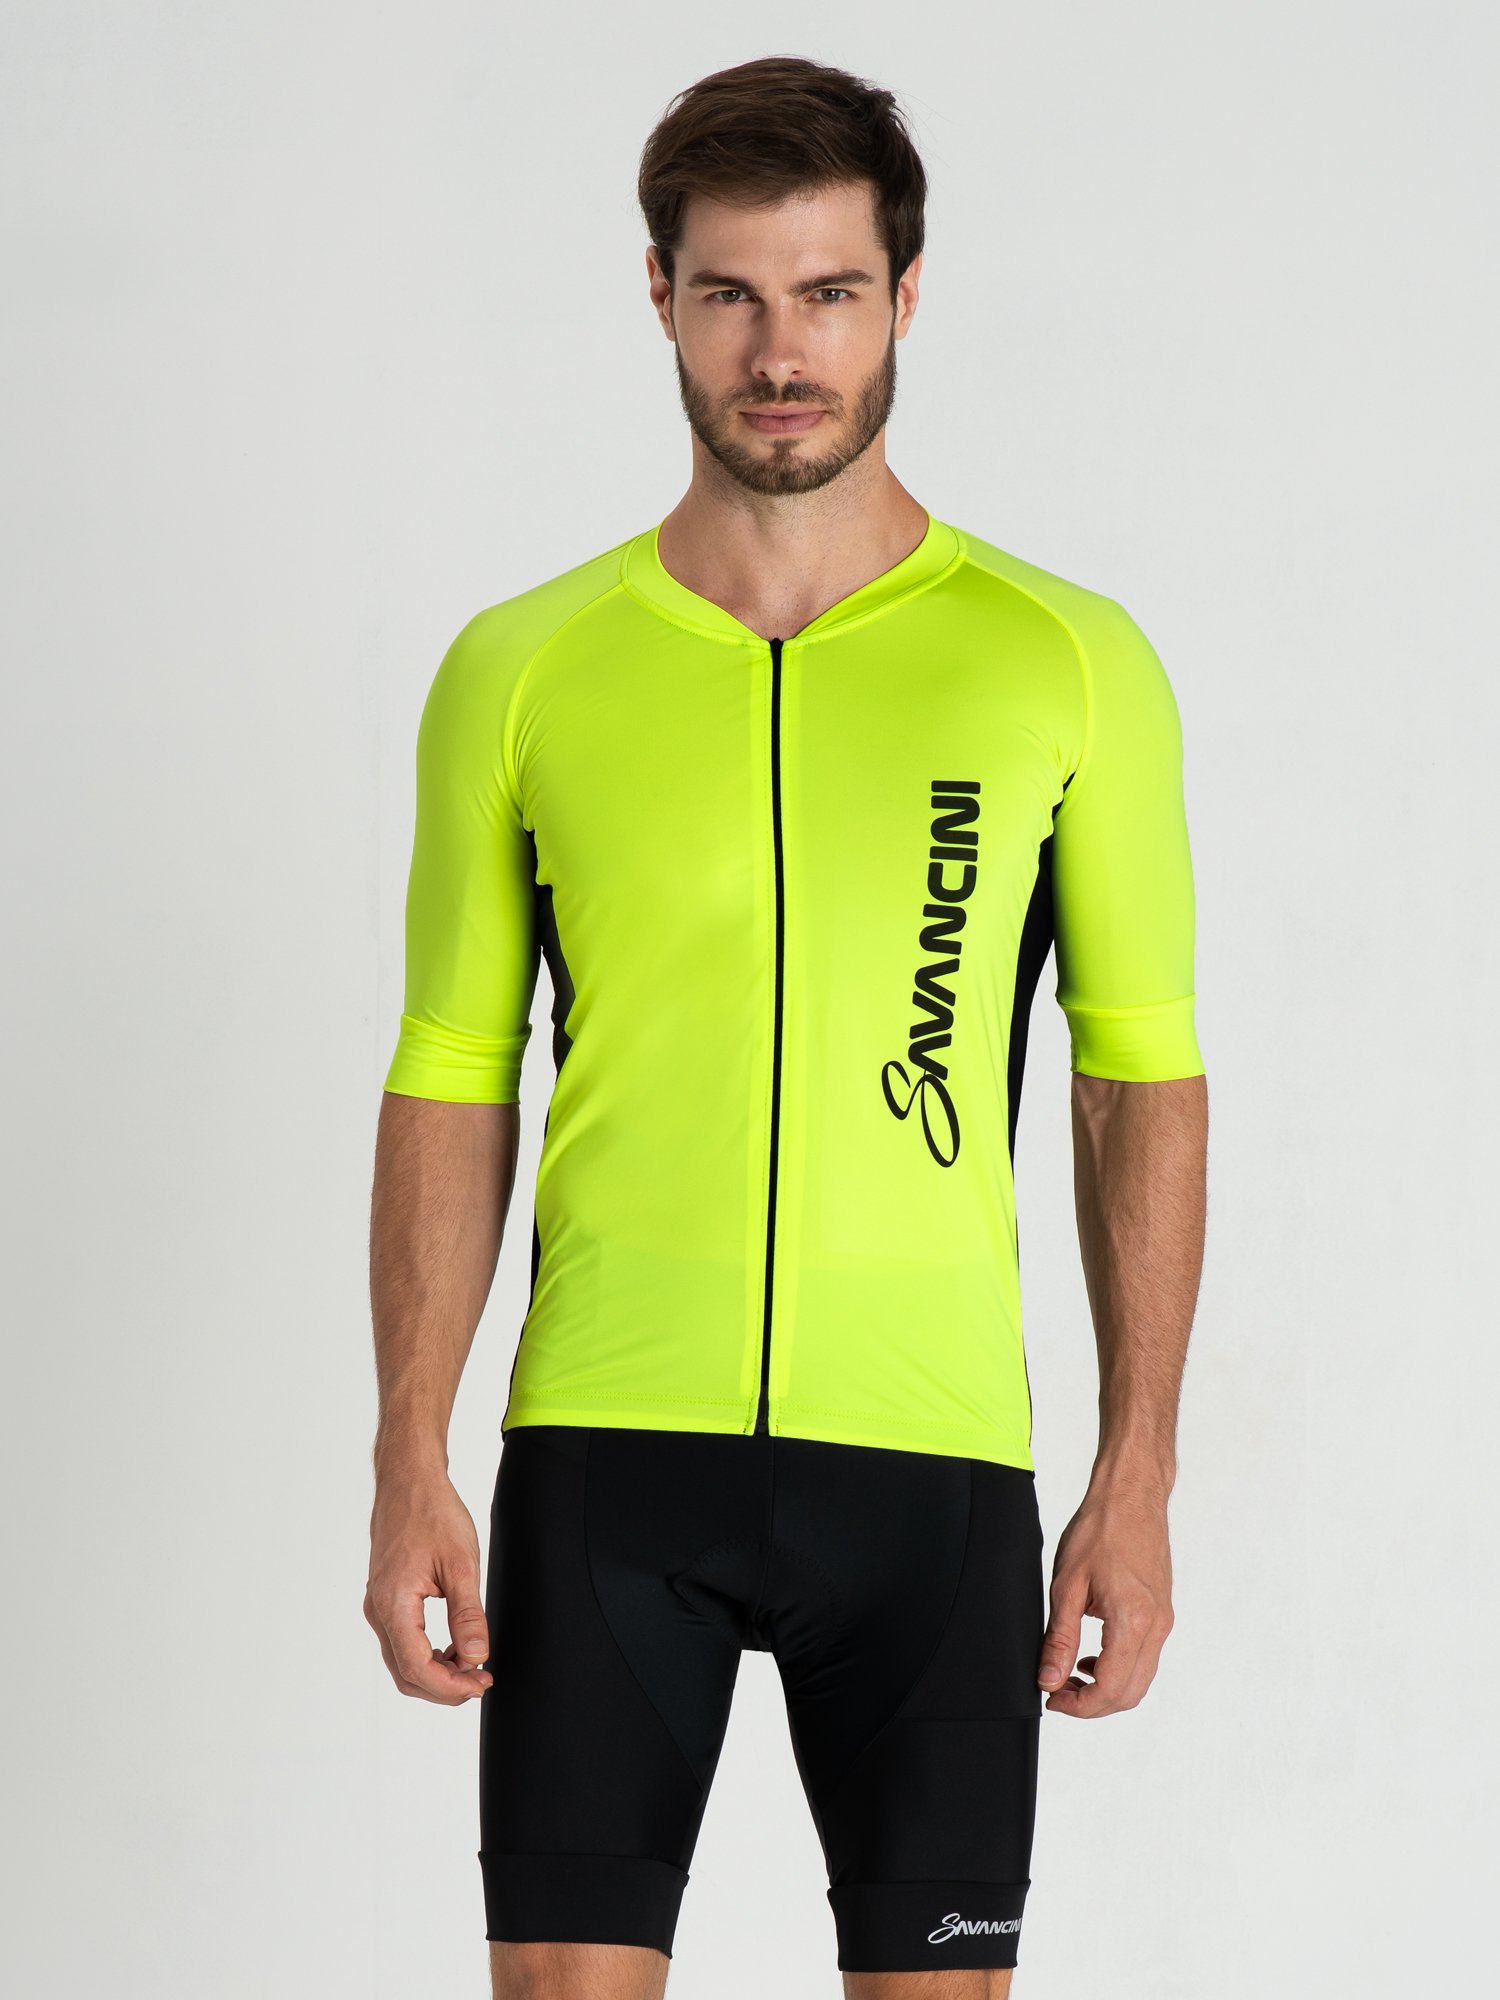 Camisa de Ciclismo Masculina Premium Ziper Total Confortável - P